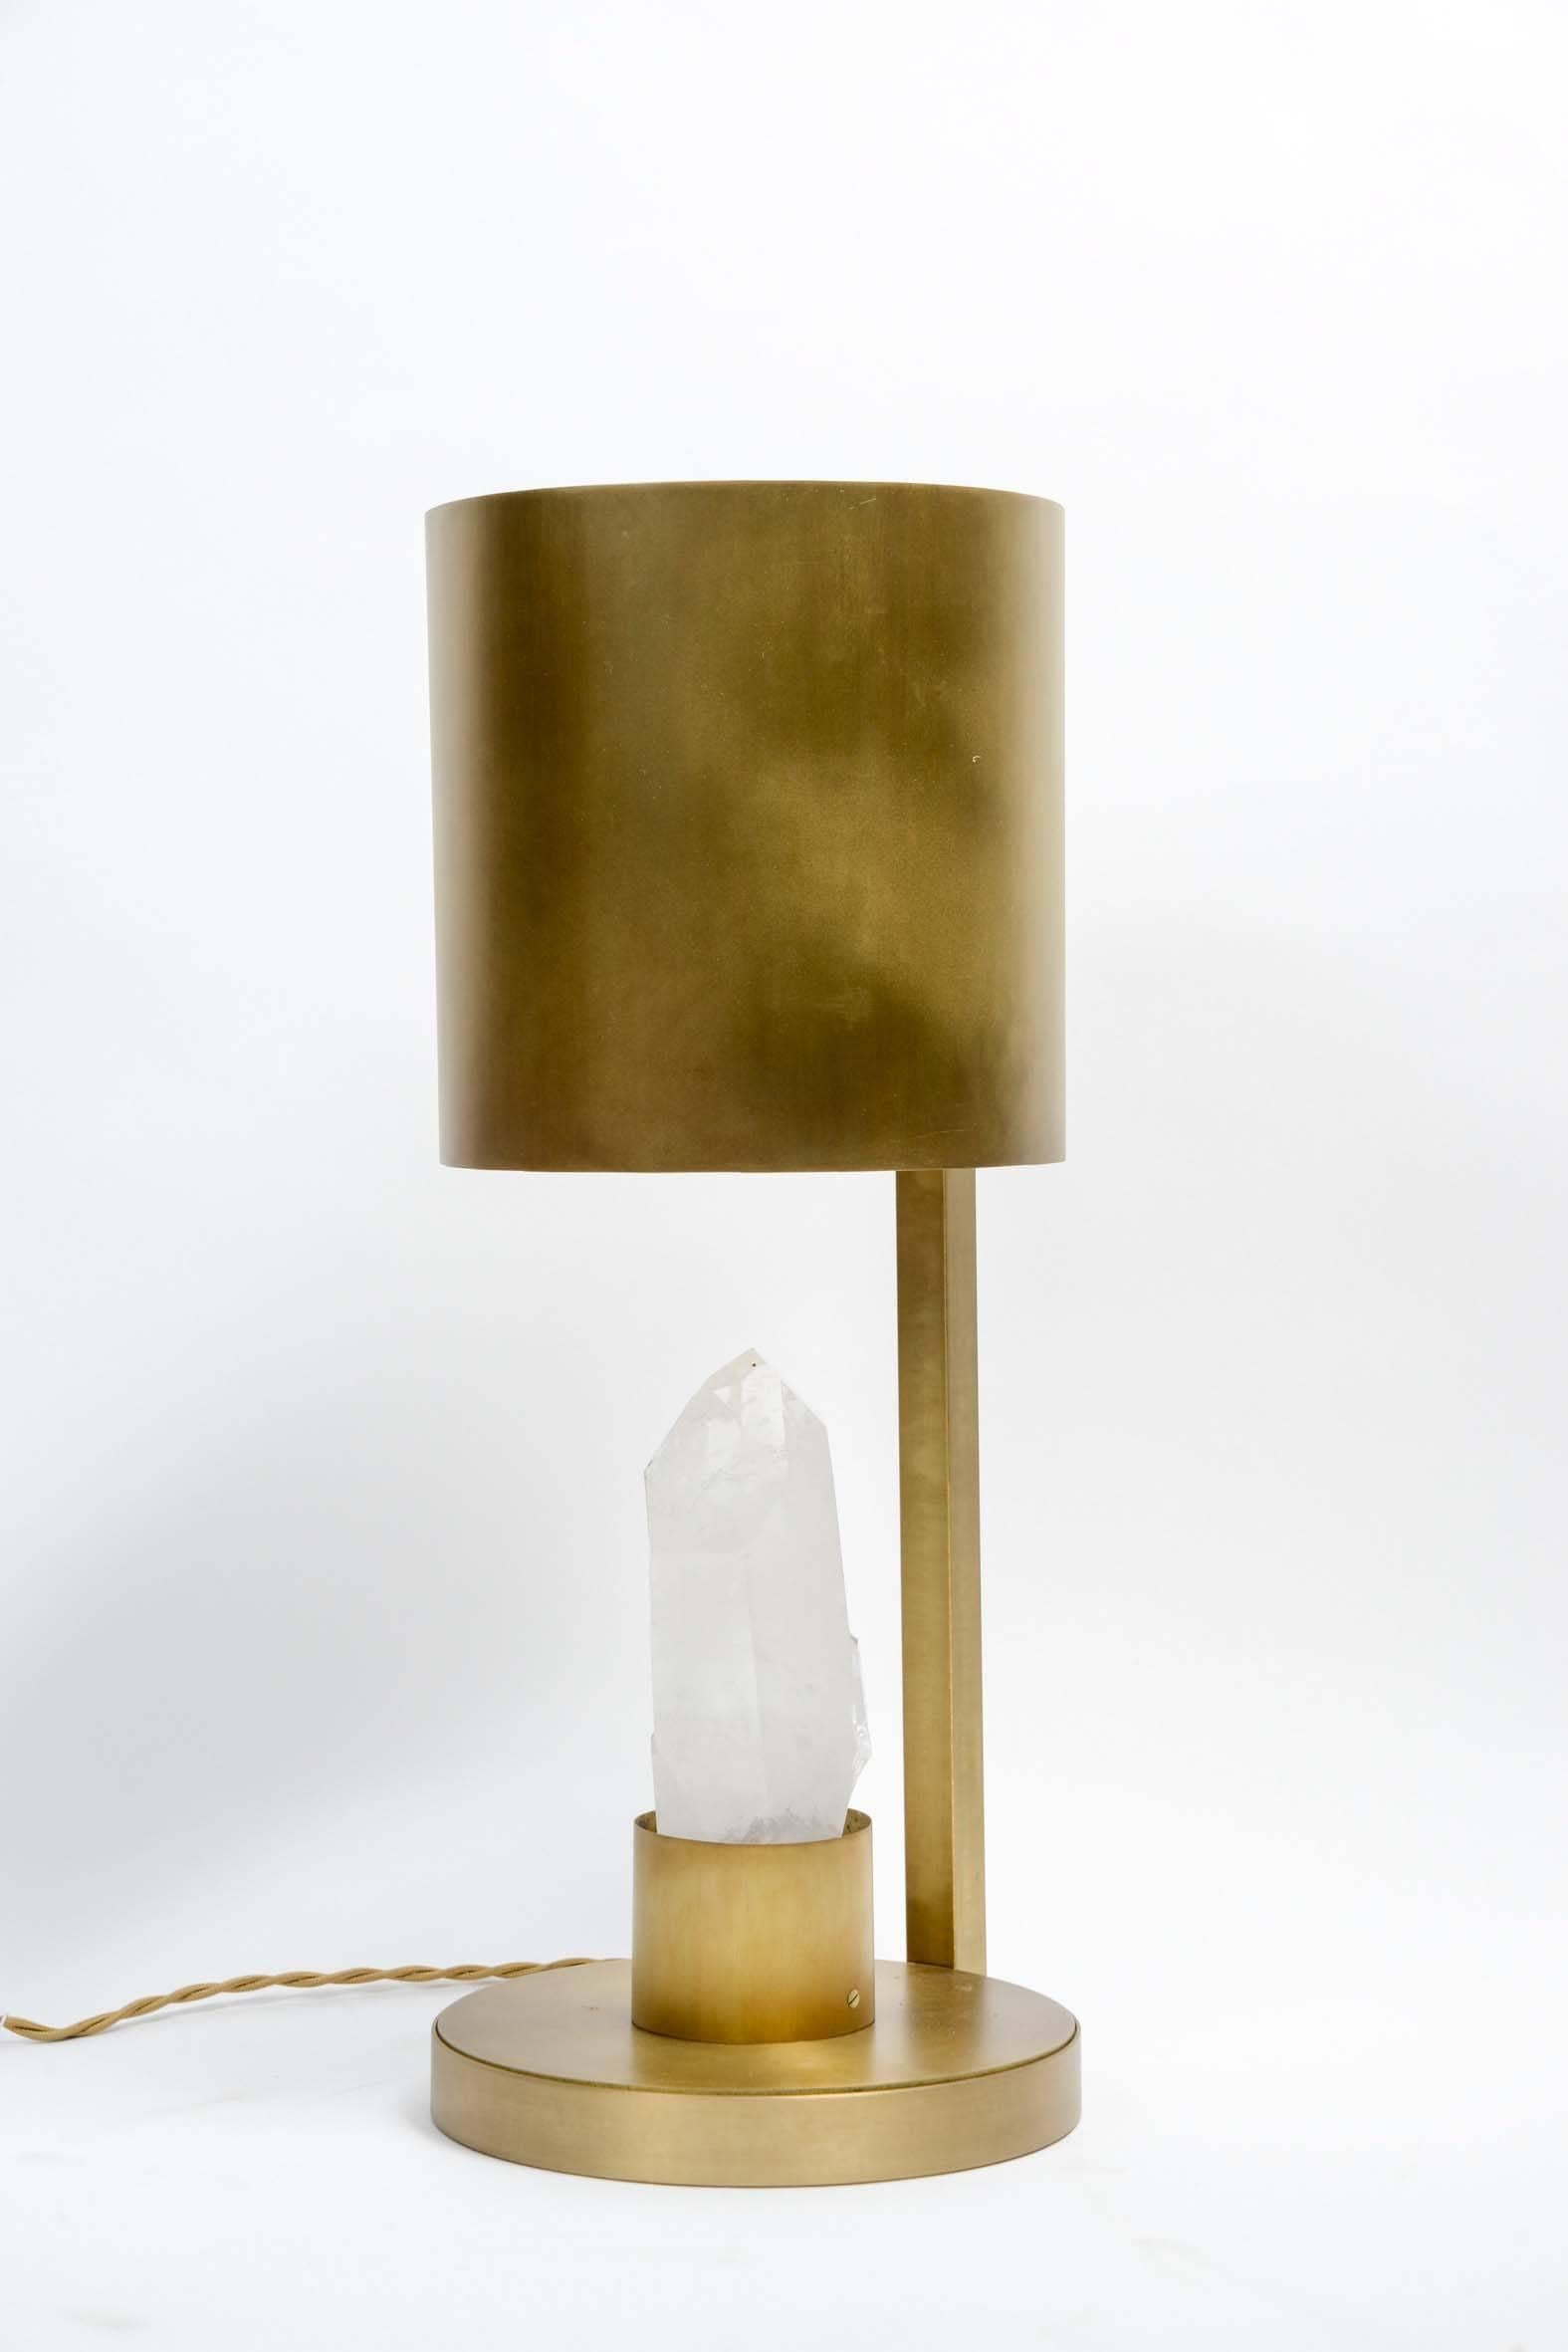 Zylindrische Schreibtischlampe aus Messing und einem Bergkristall in der Mitte.

Eine Lichtquelle, eine Glühbirne, die den Bergkristall von oben beleuchtet.